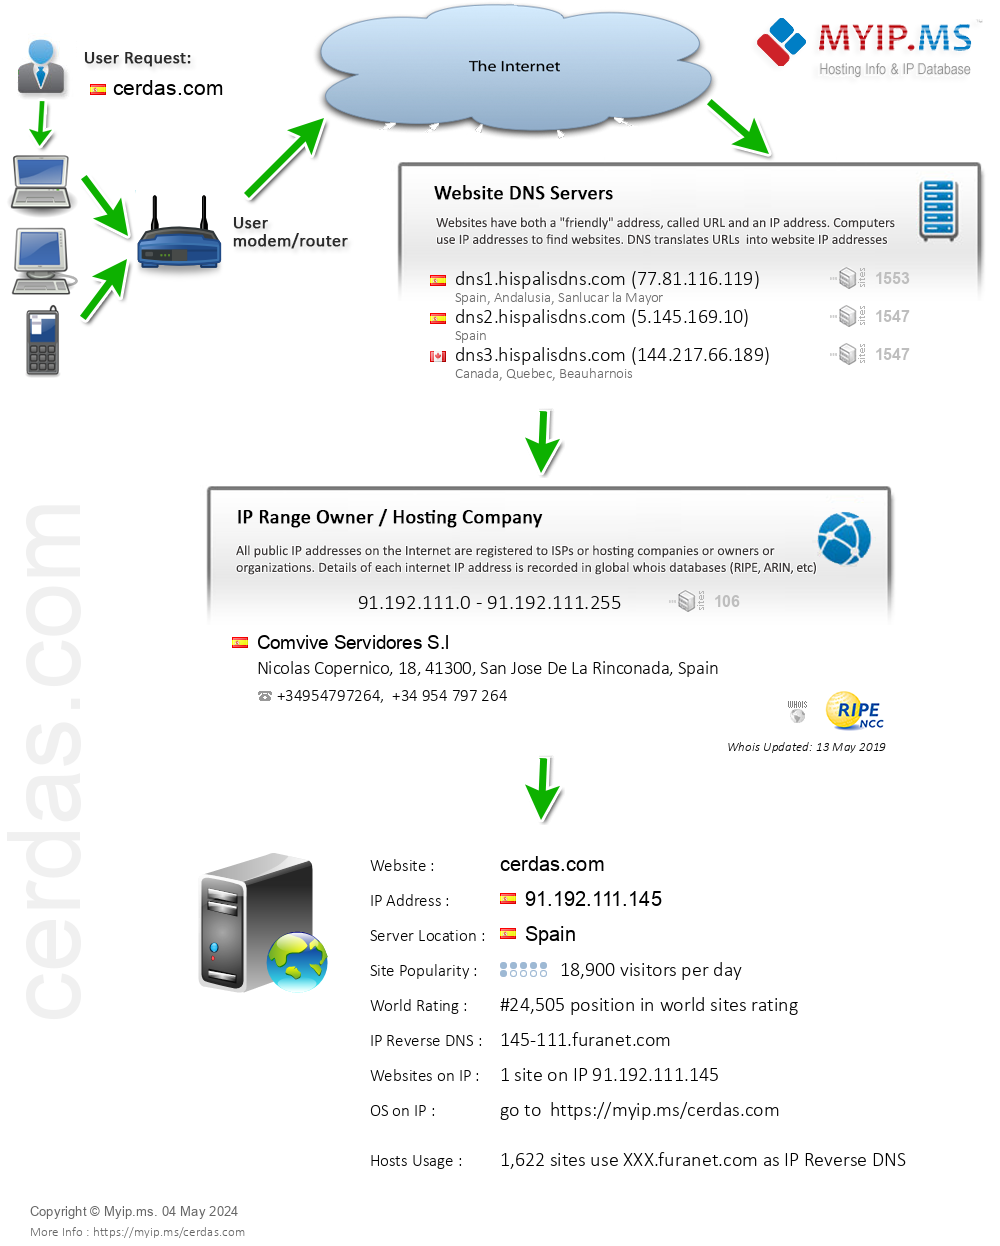 Cerdas.com - Website Hosting Visual IP Diagram